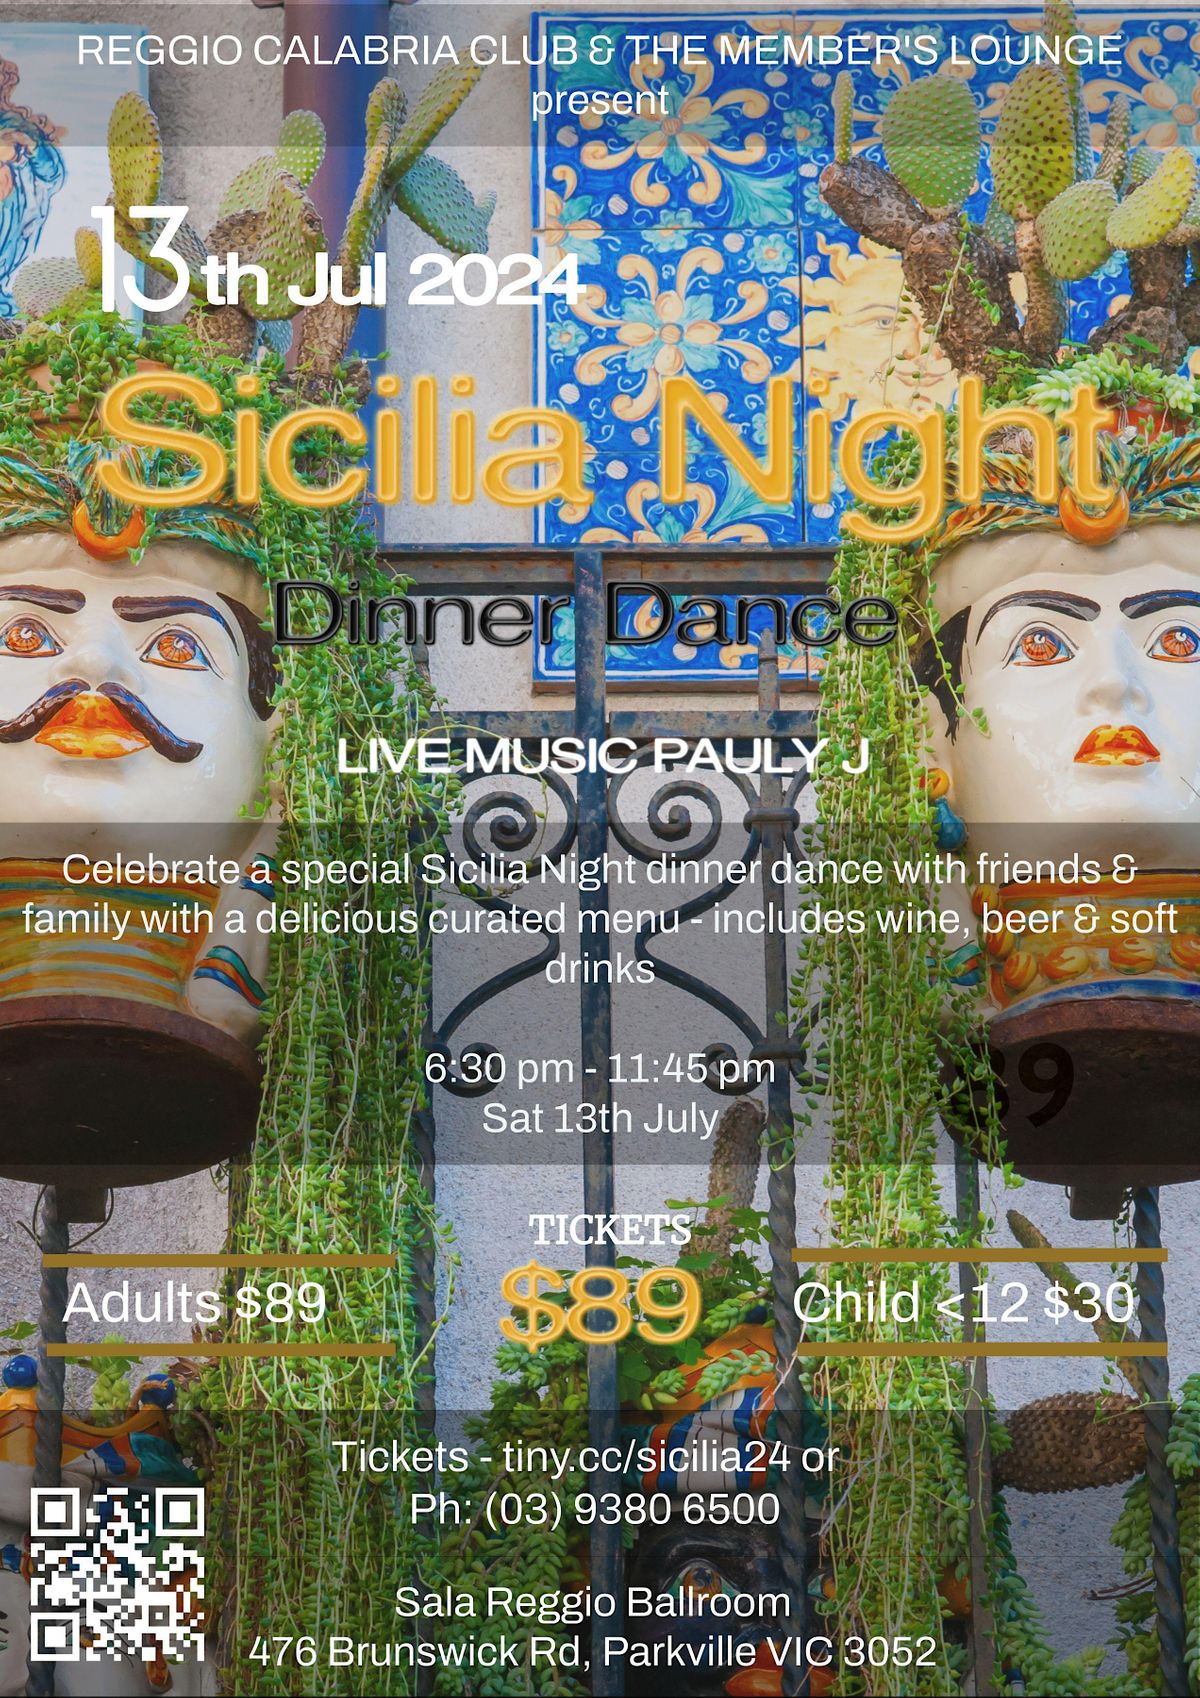 Sicilia Night Dinner Dance @ The Reggio Calabria Club